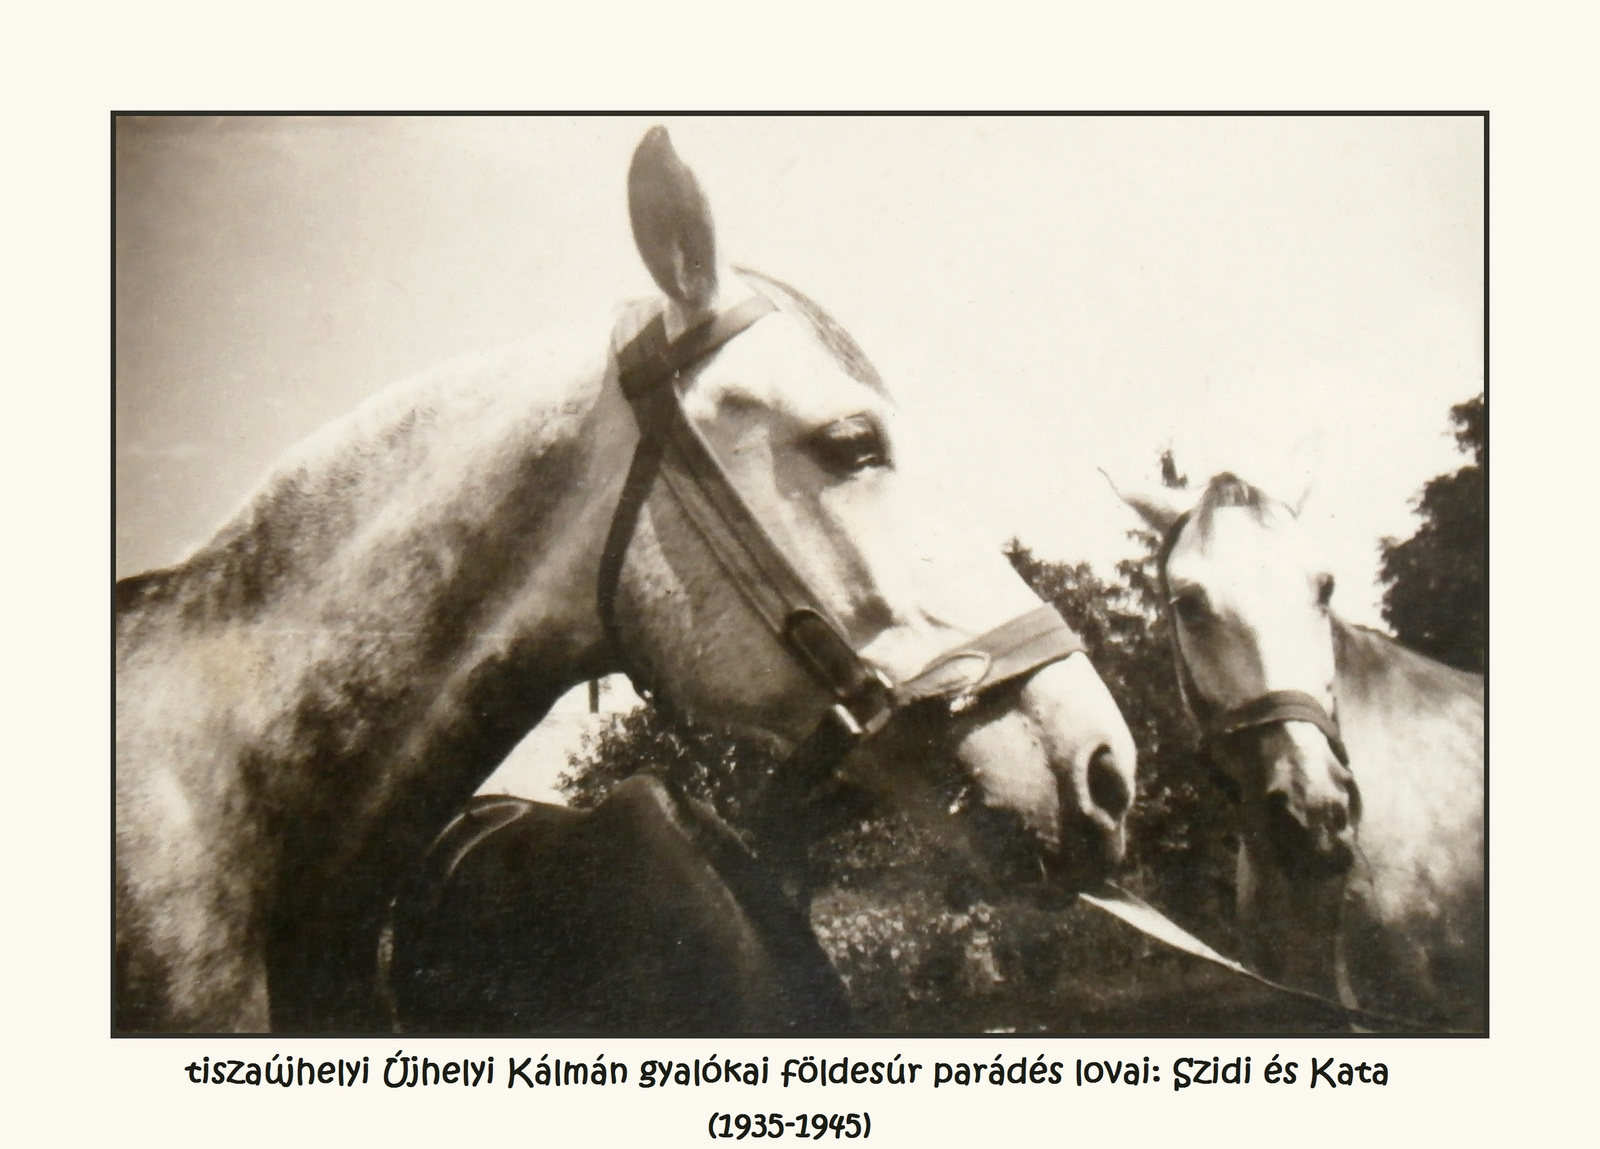 913. Szidi és Kata, parádés lovak (1935-1945))